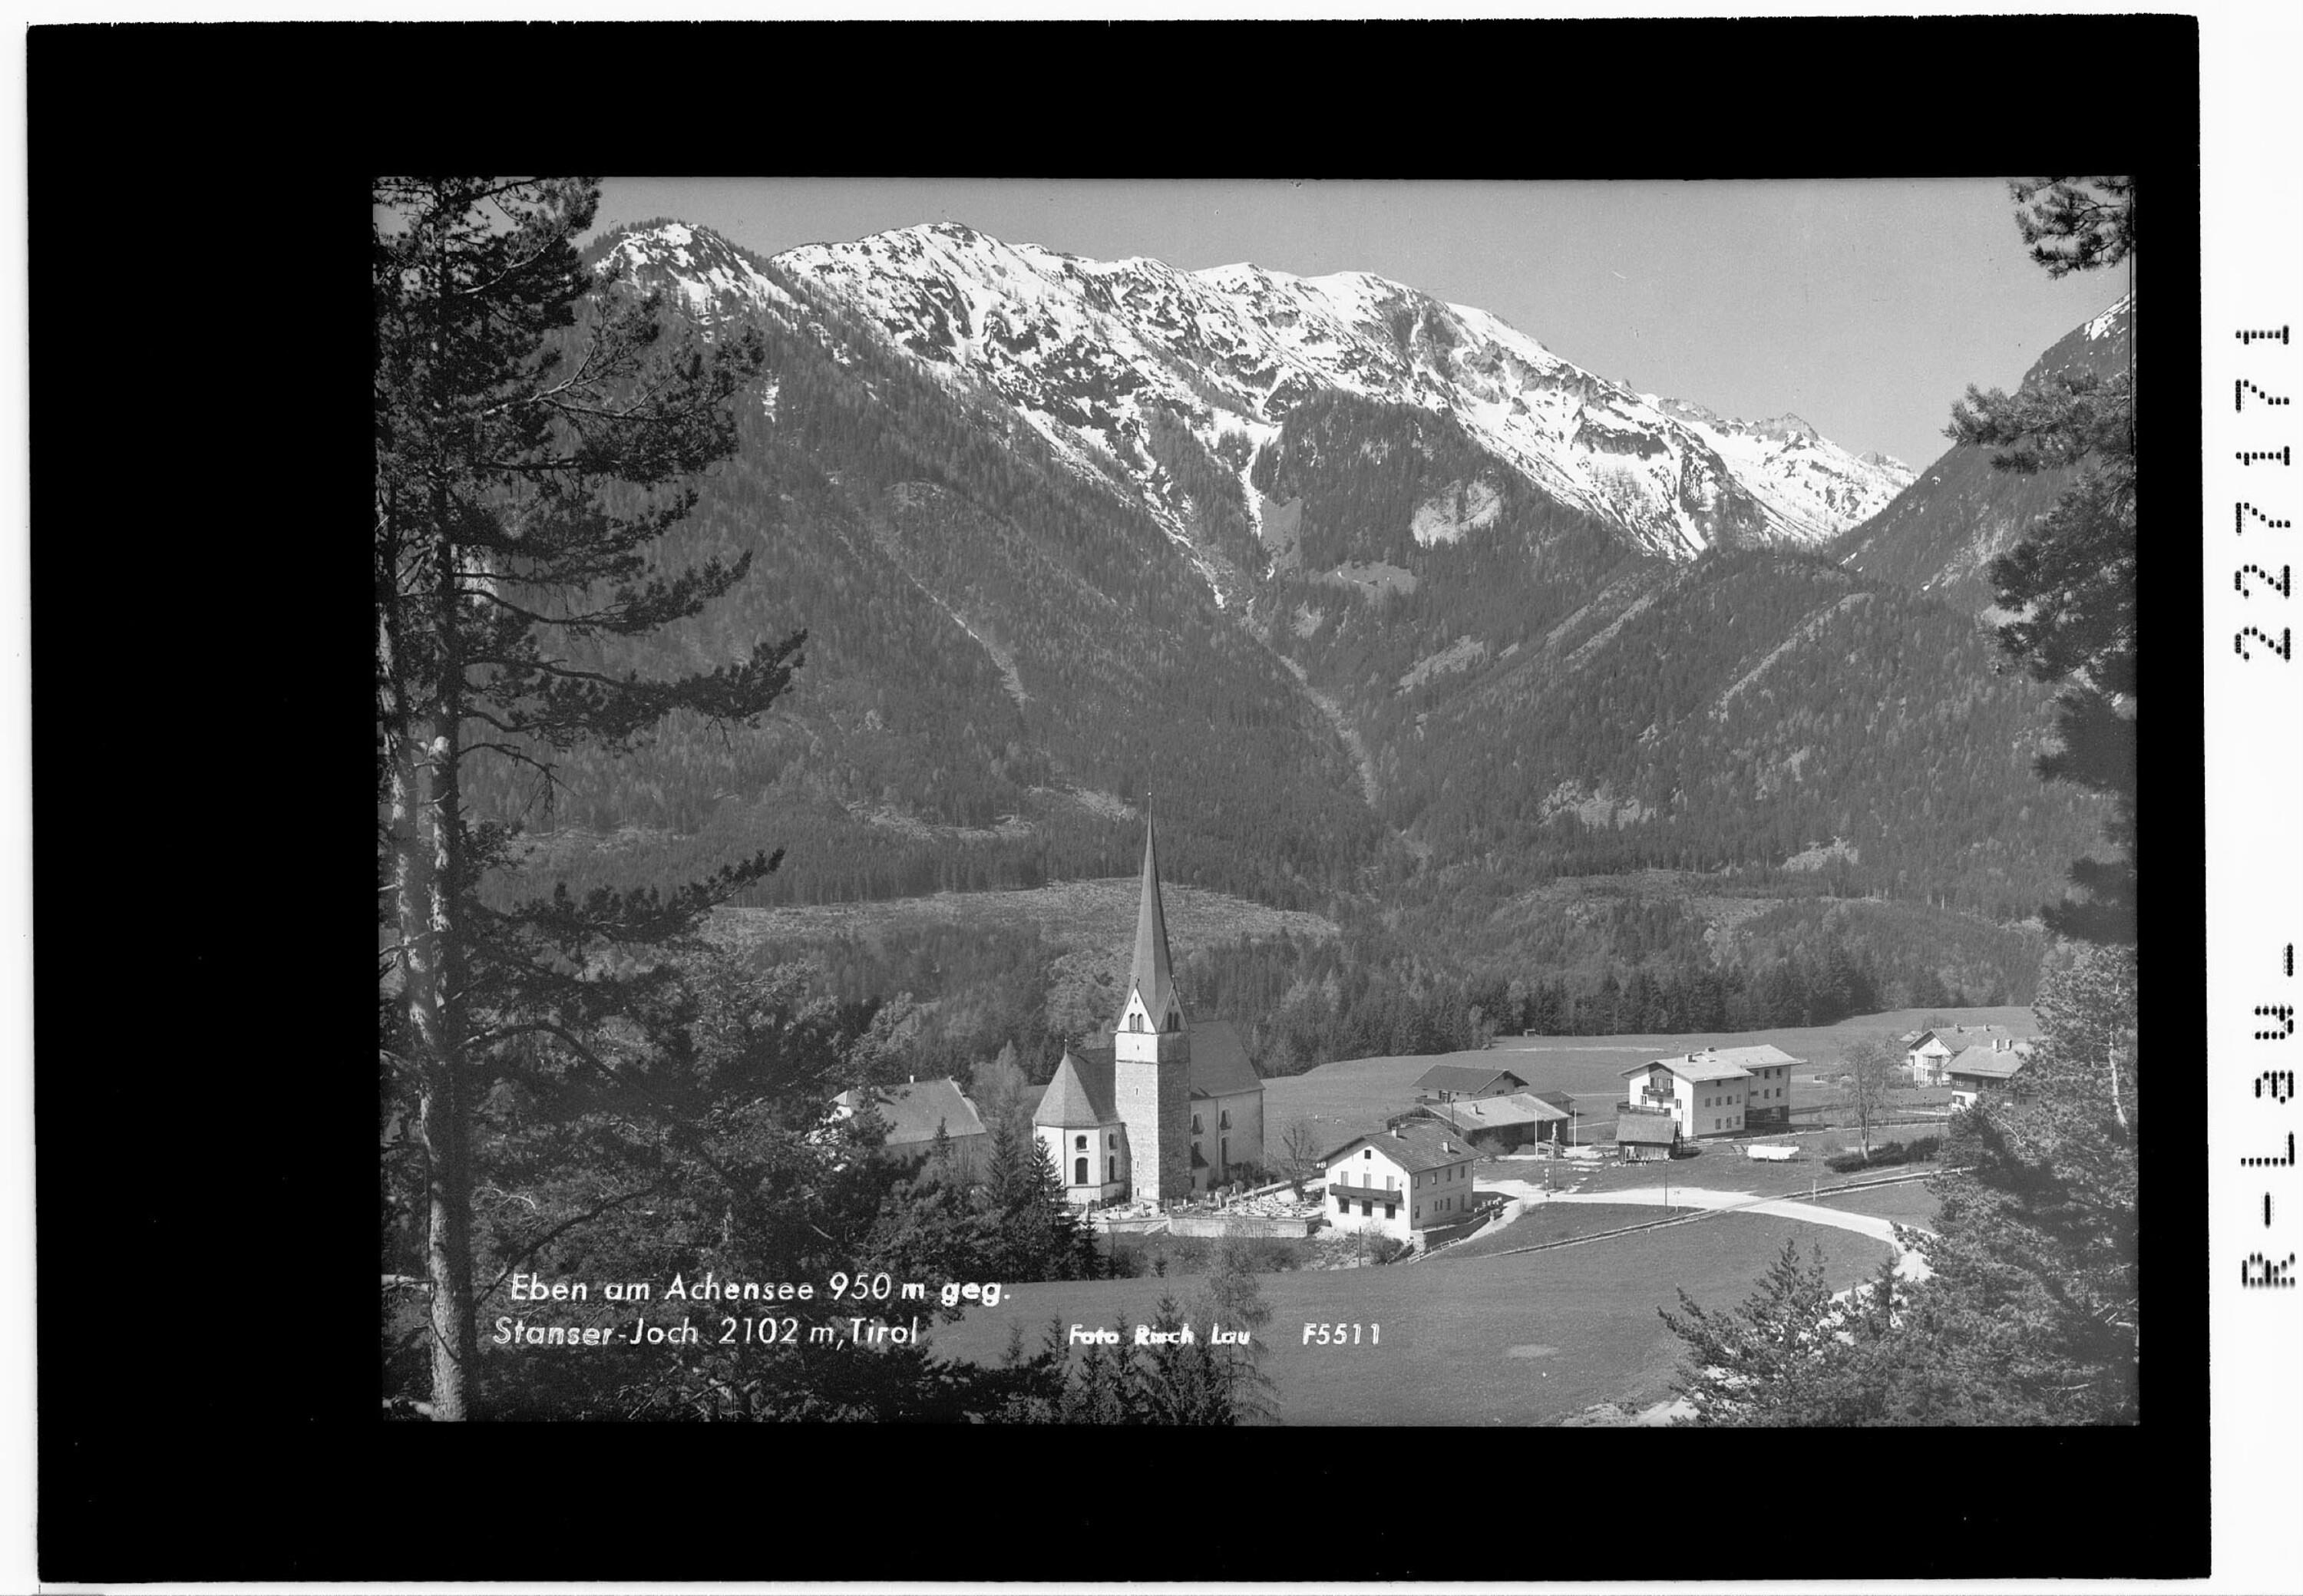 Eben am Achensee 950 m gegen Stanser Joch 2102 m / Tirol></div>


    <hr>
    <div class=